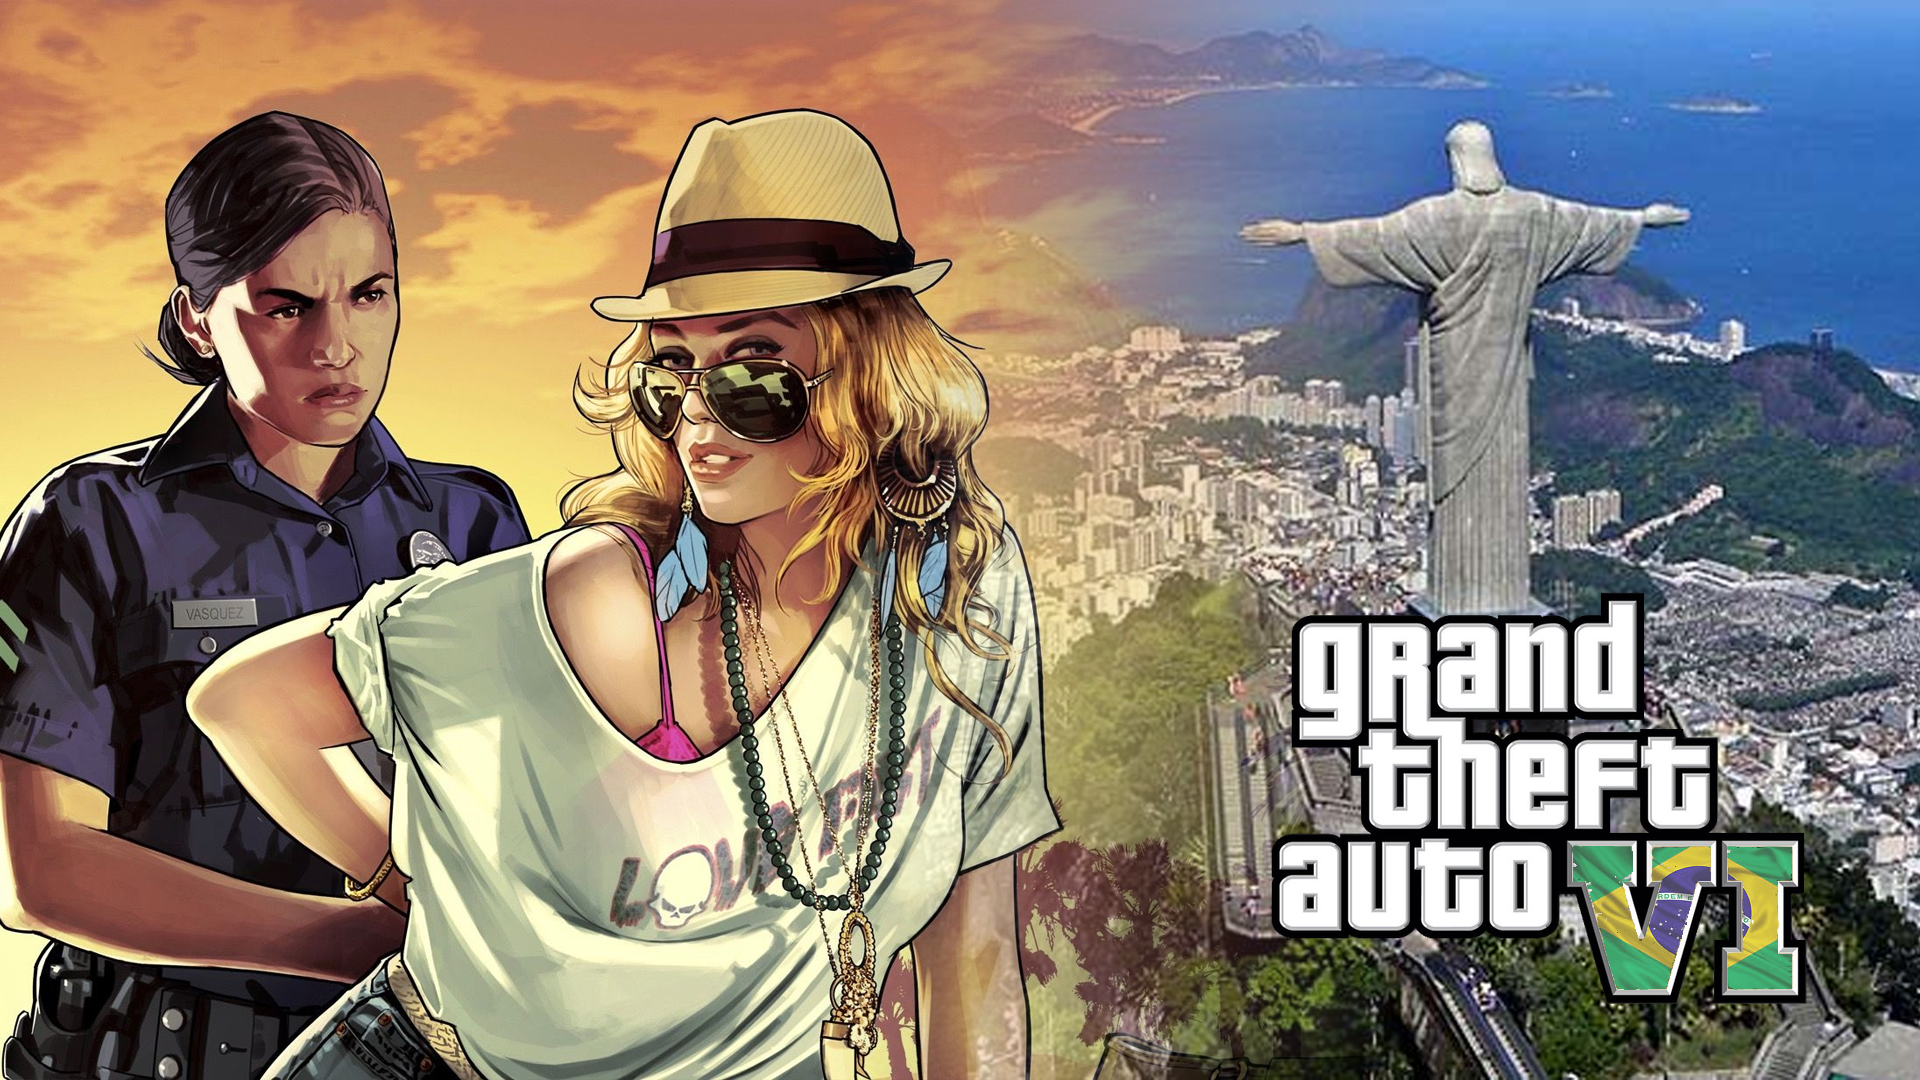 GTA V e o Rio de Janeiro